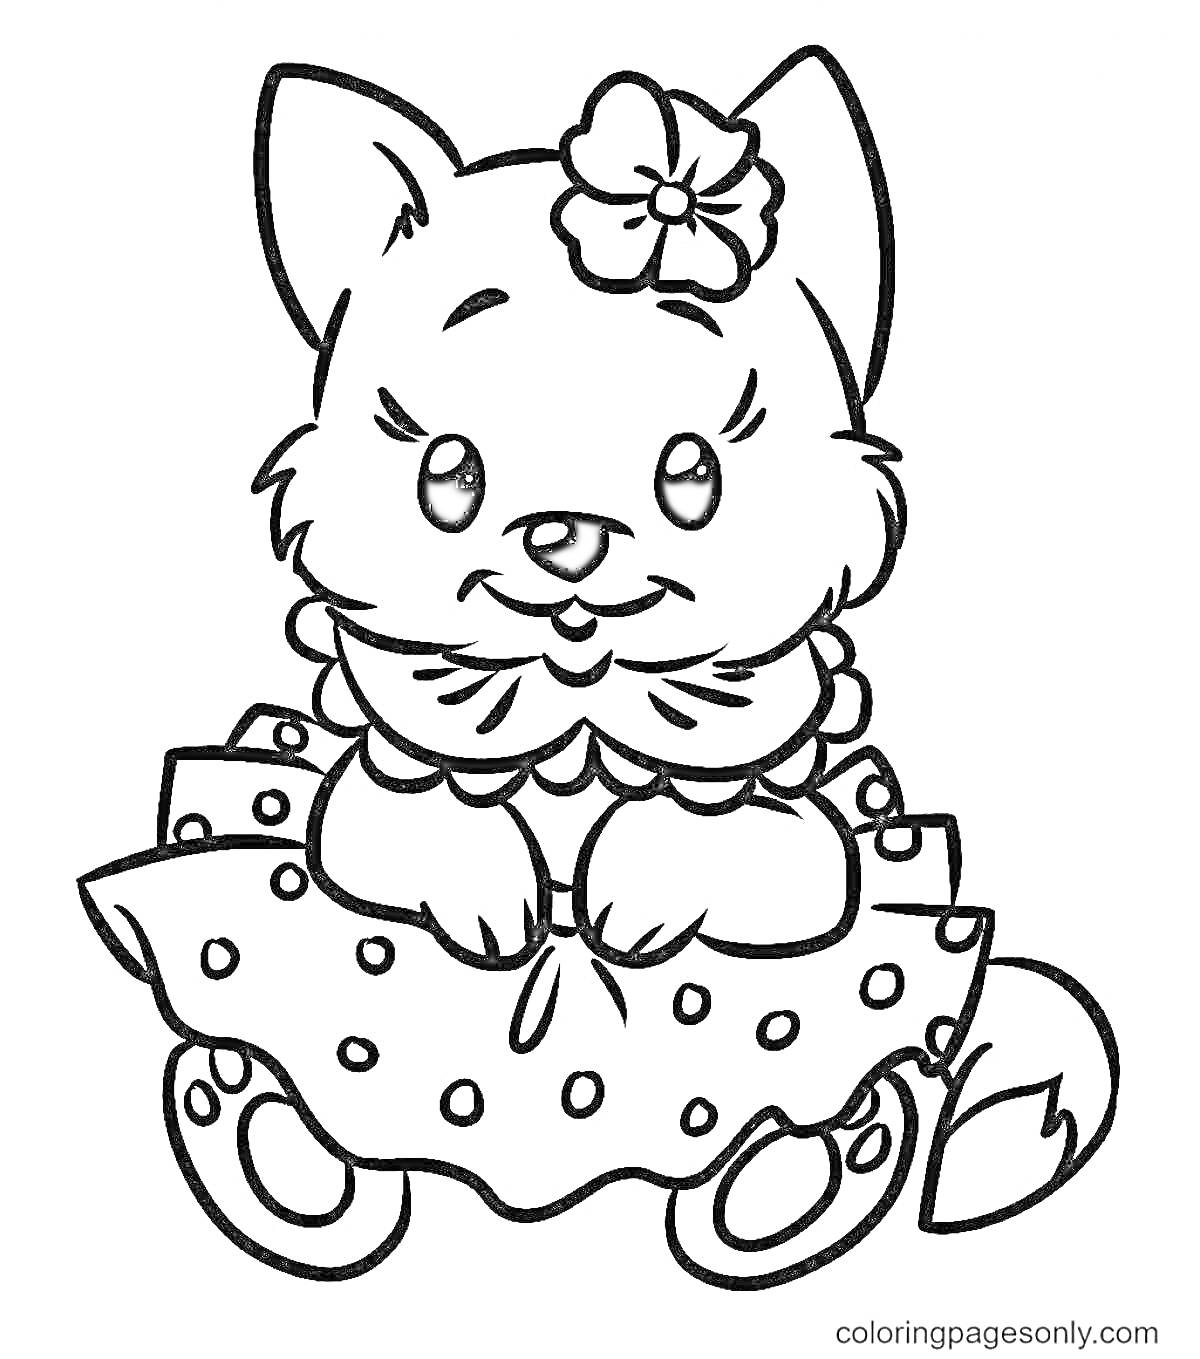 Раскраска Кошечка в платье с цветком на голове